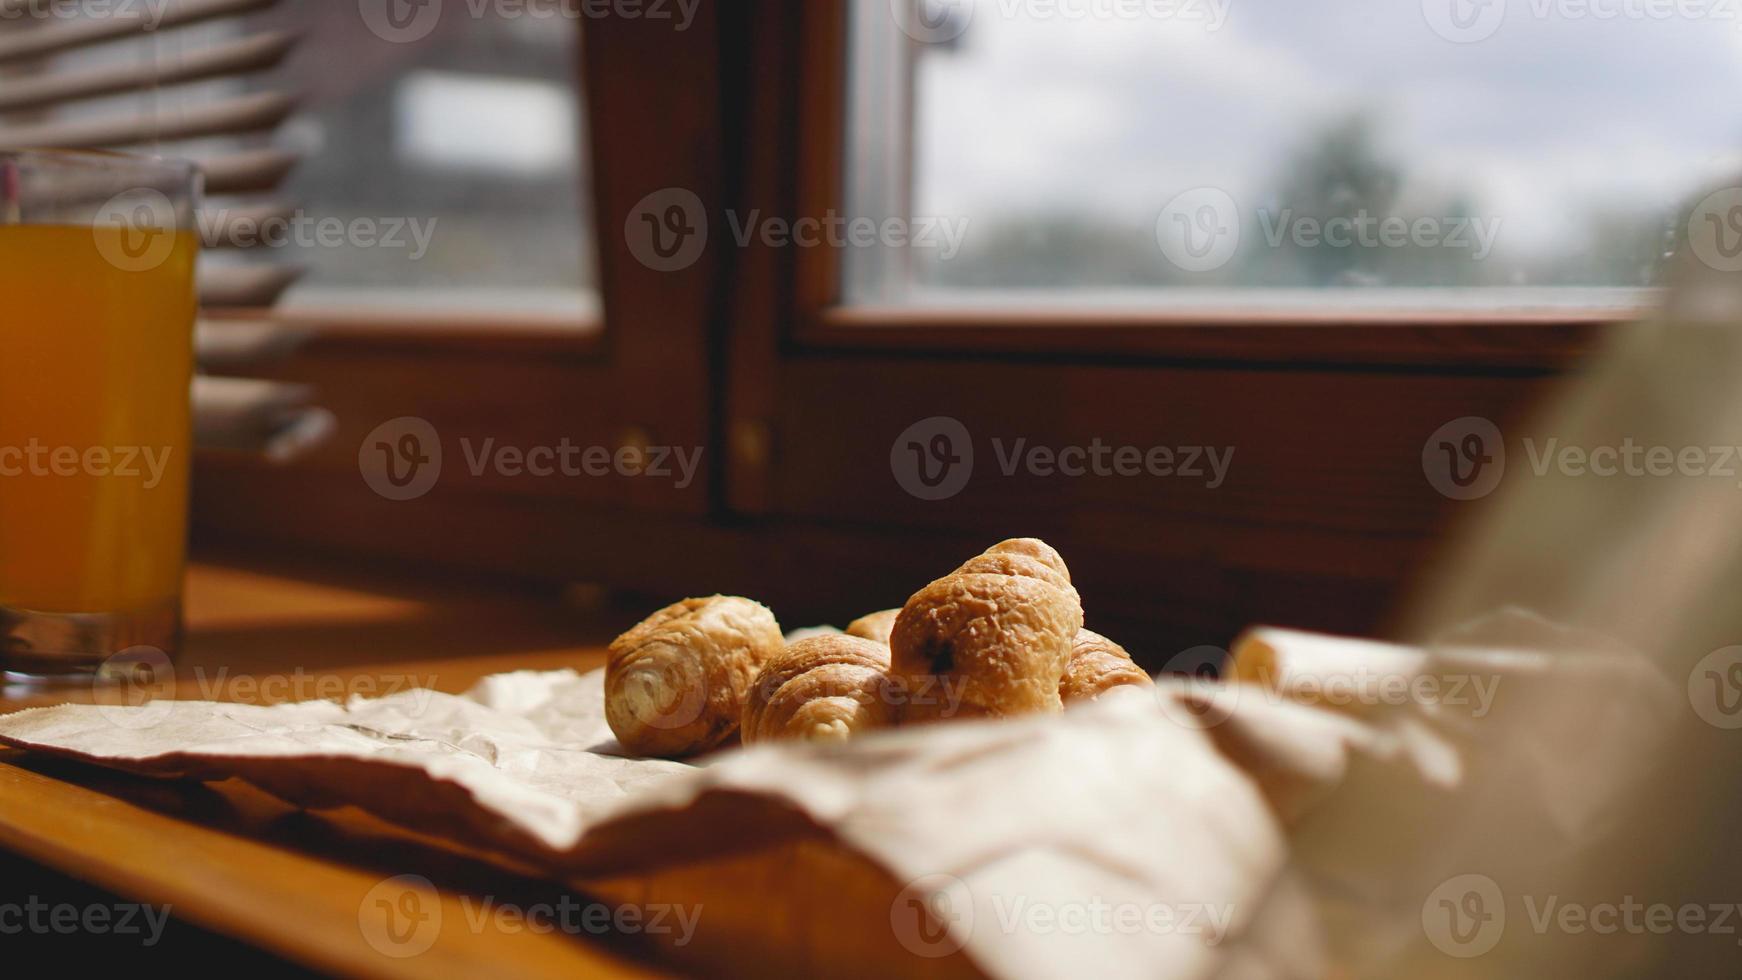 café da manhã francês com croissant, louças kraft em papel kraft foto